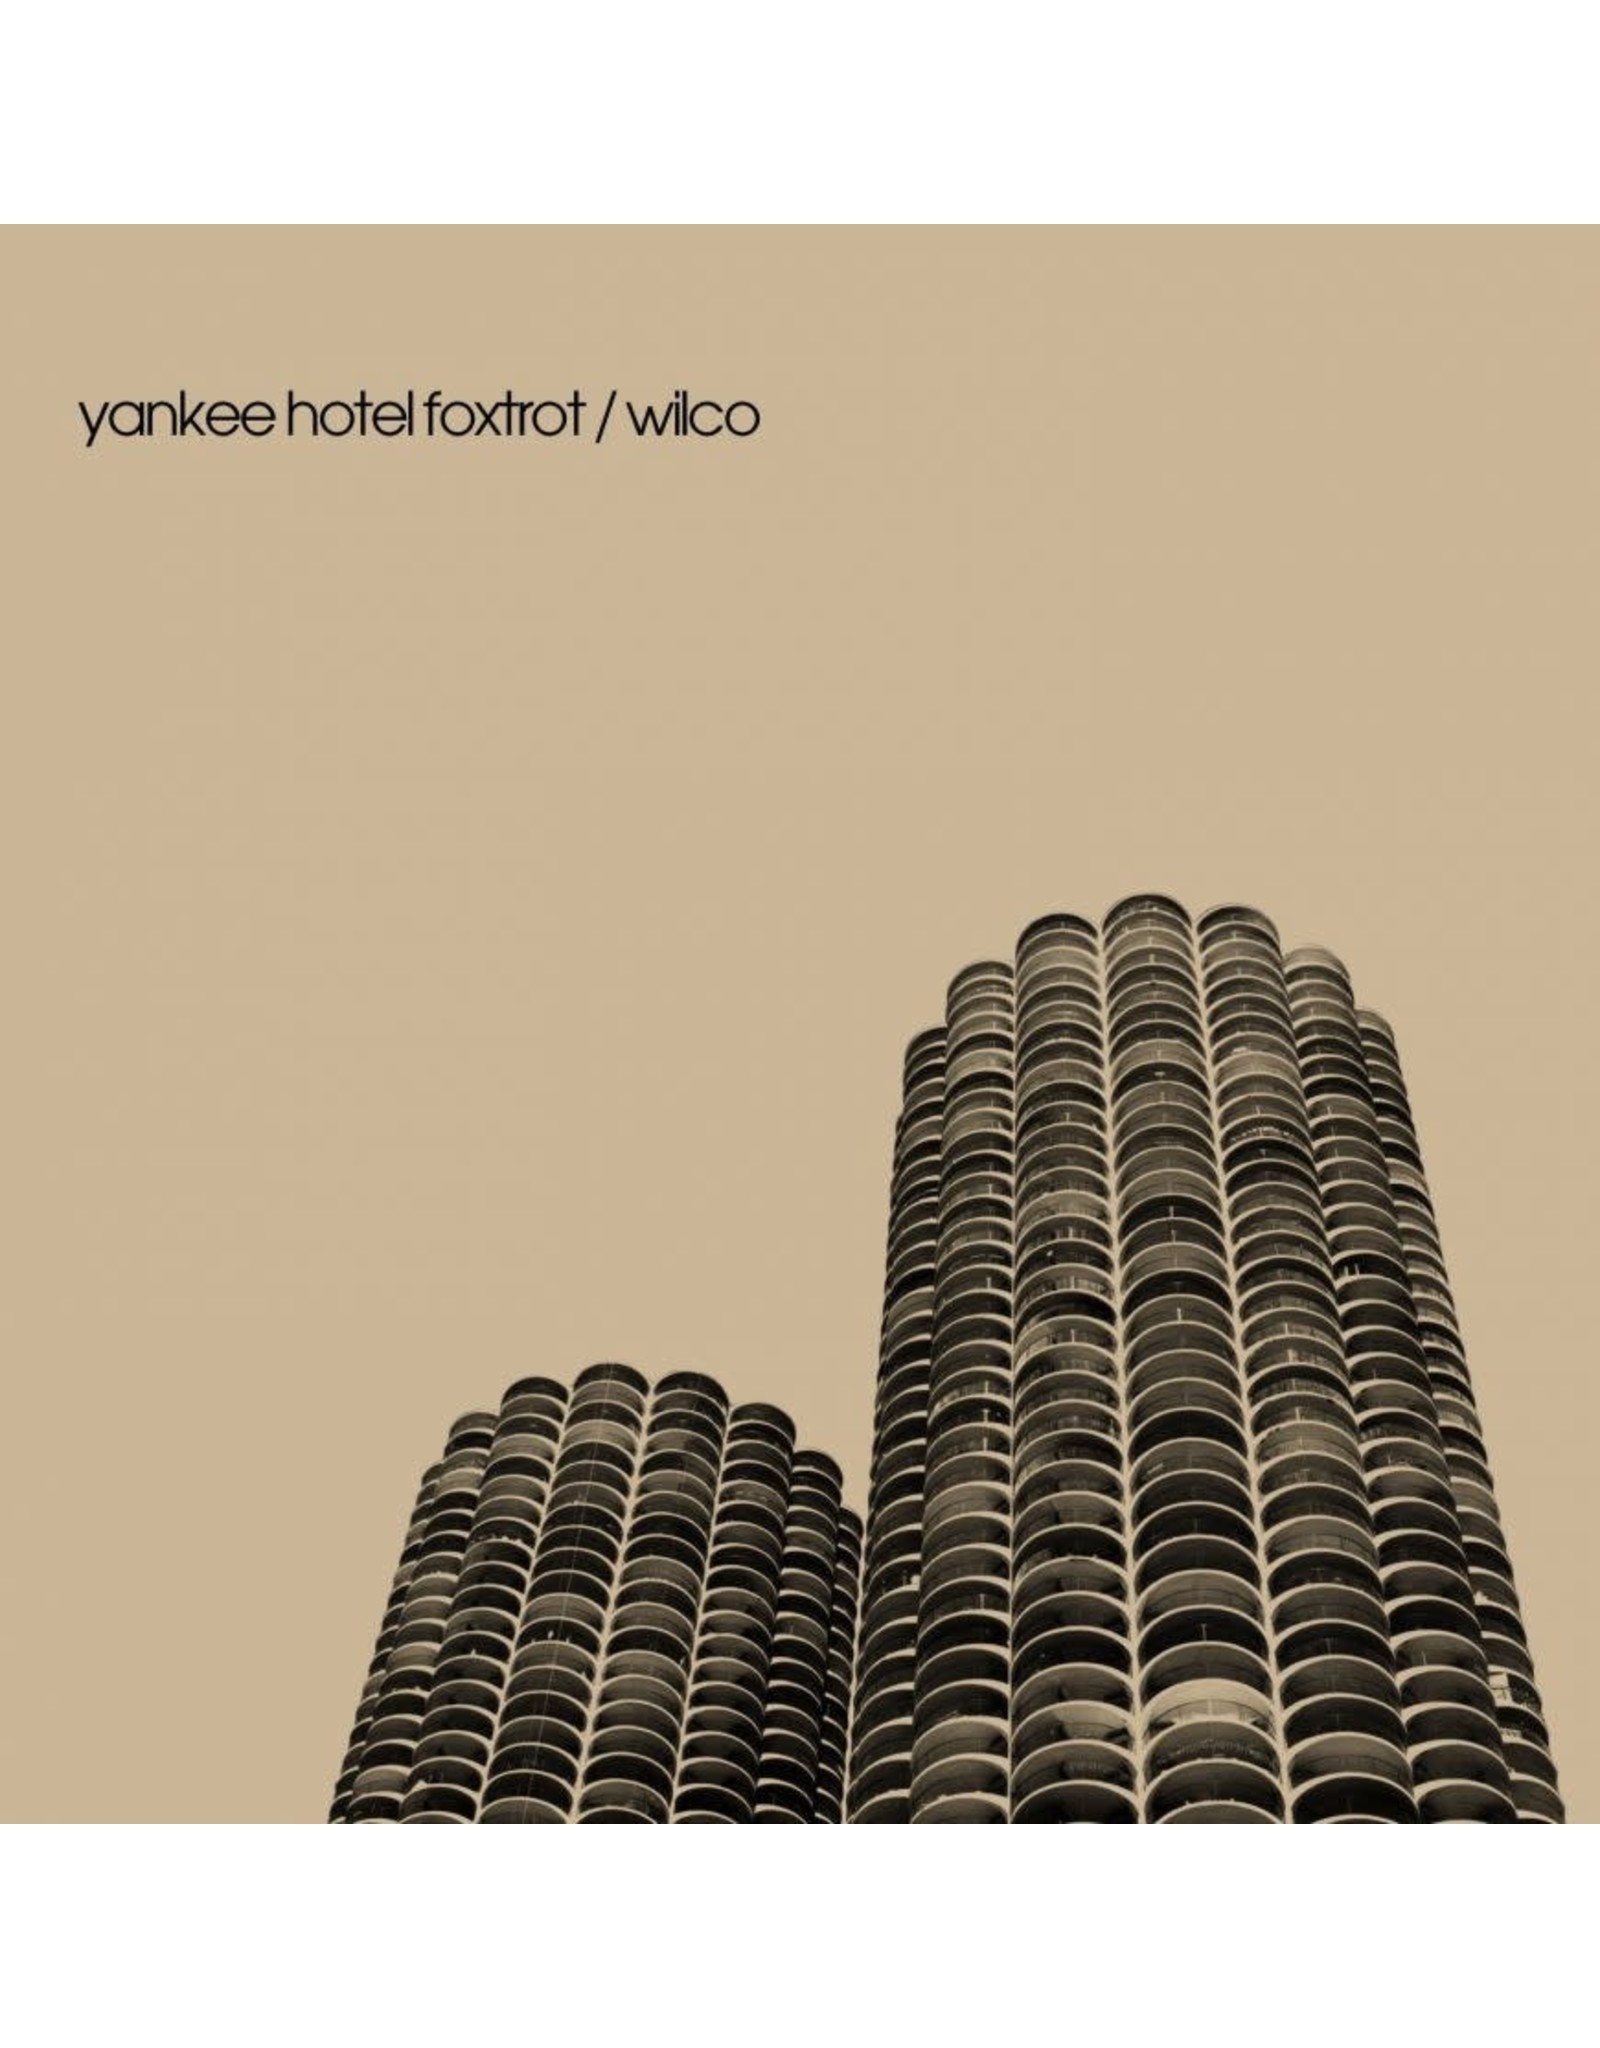 Wilco - Yankee Hotel Foxtrot (20th Anniversary)